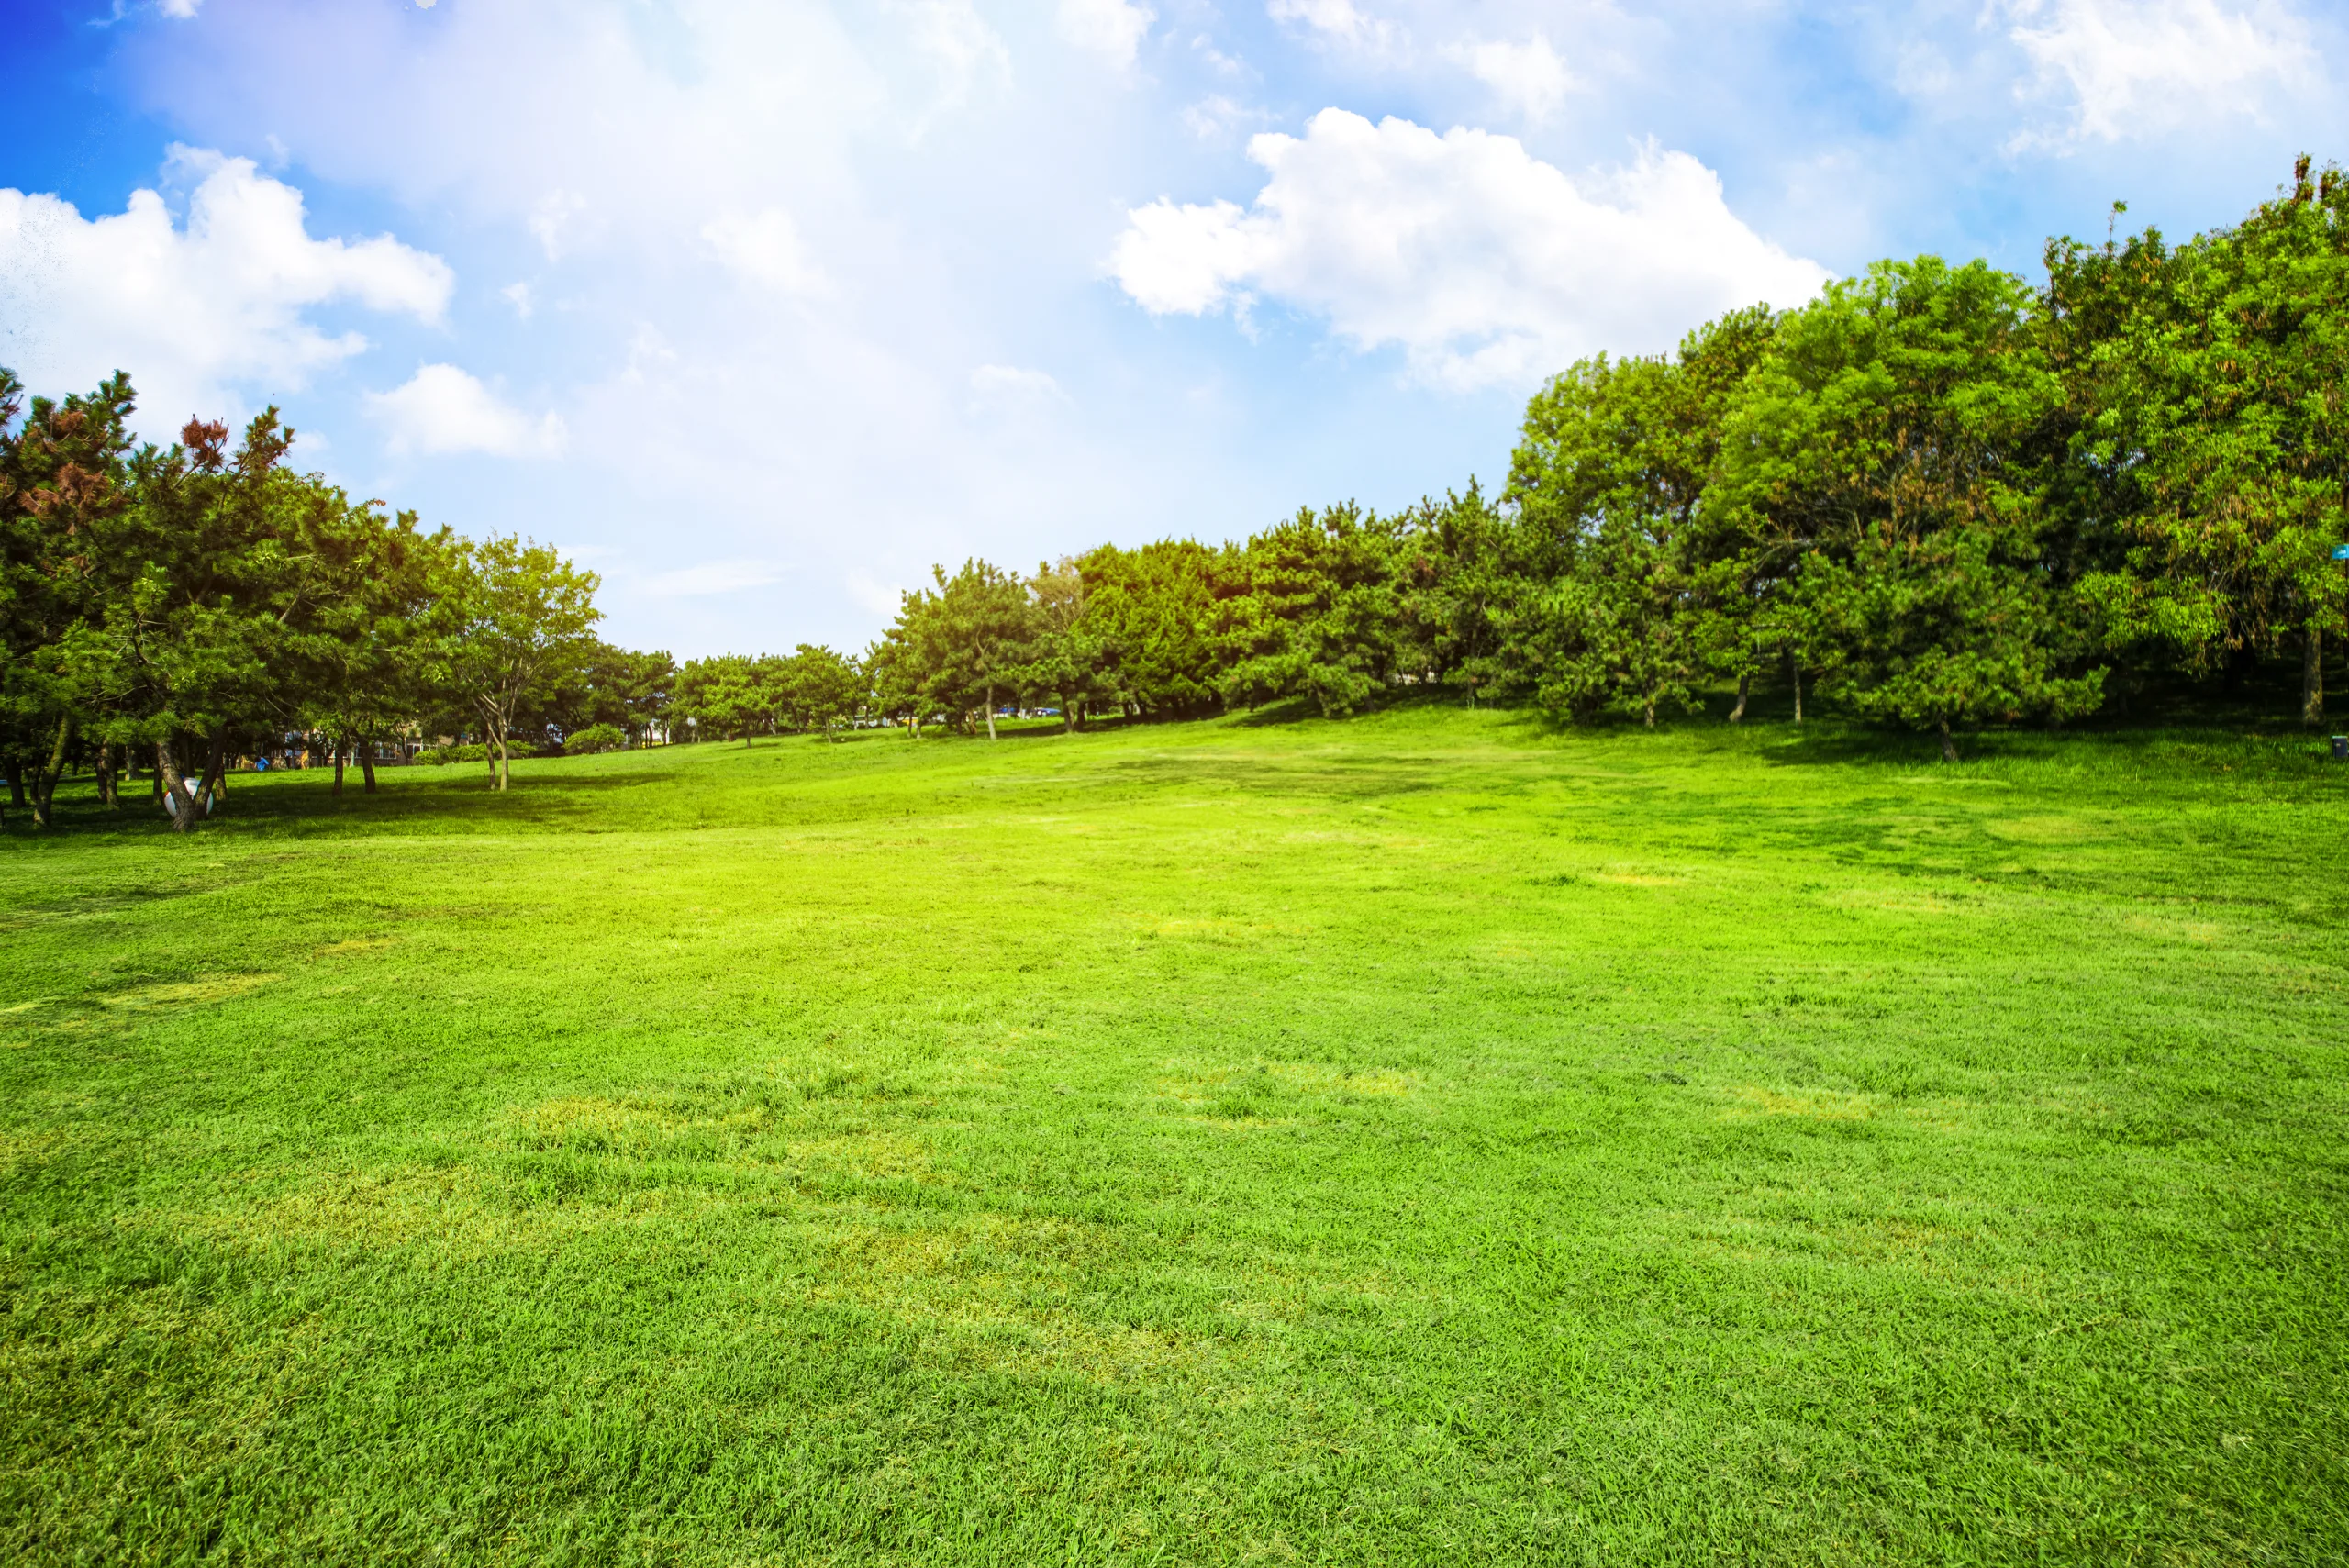 Paesaggio con paratura verde e alberi pieni di foglie verdi